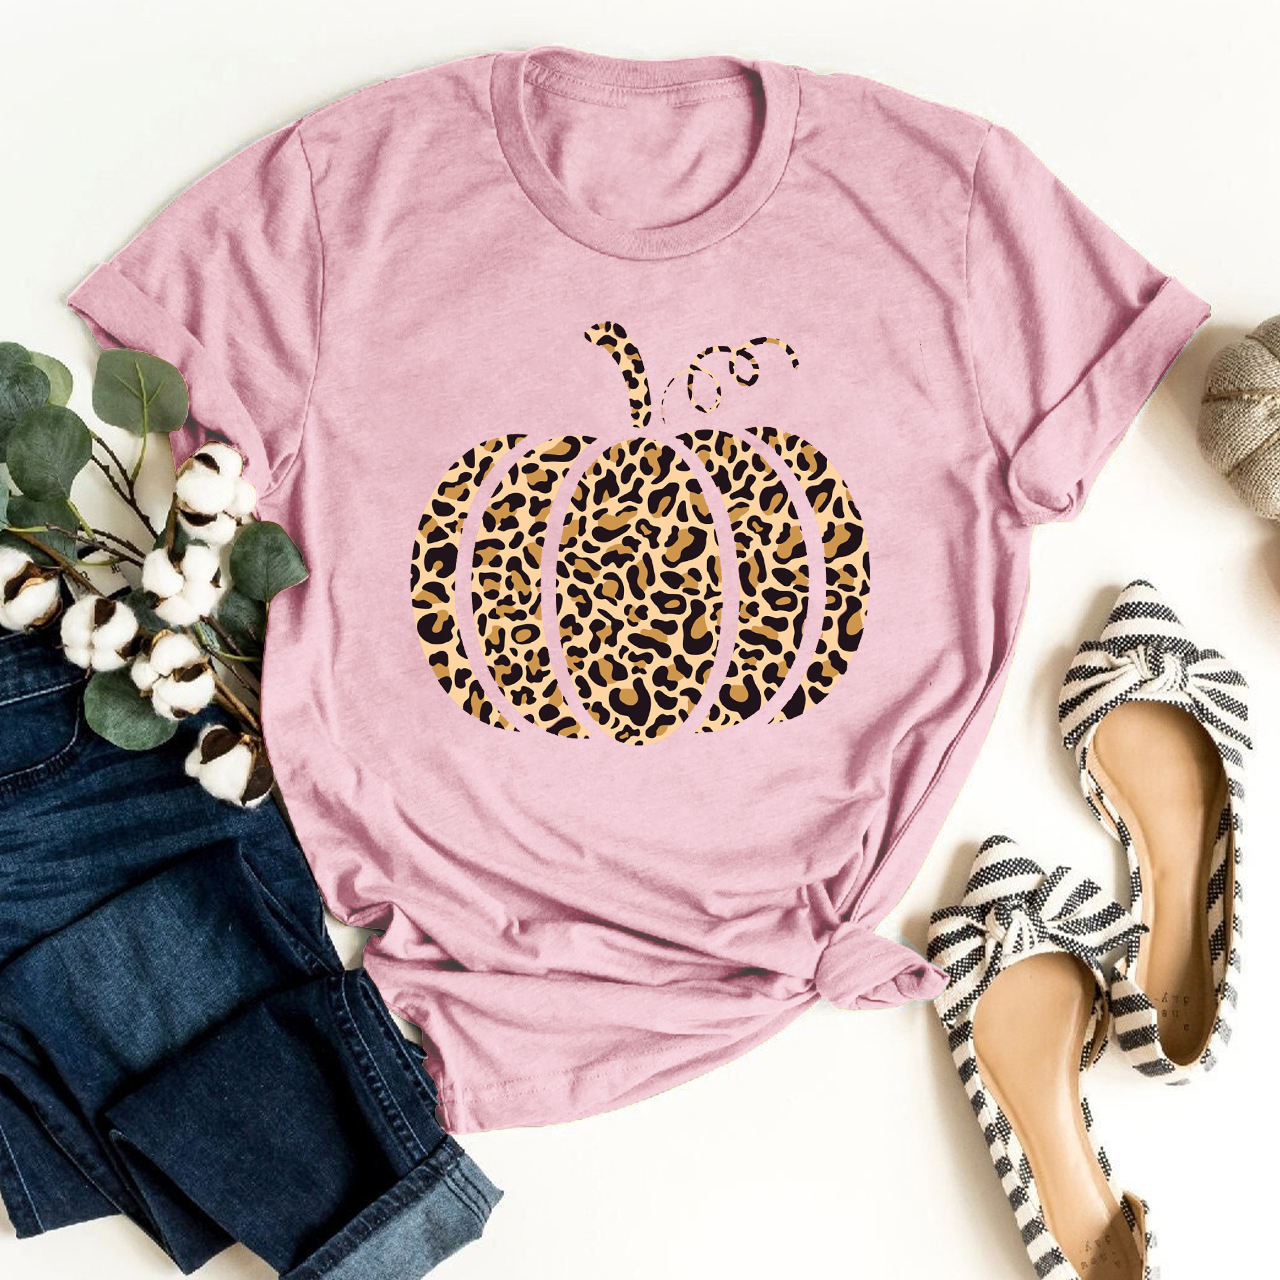 Cheetah Pumpkin Shirt For Her